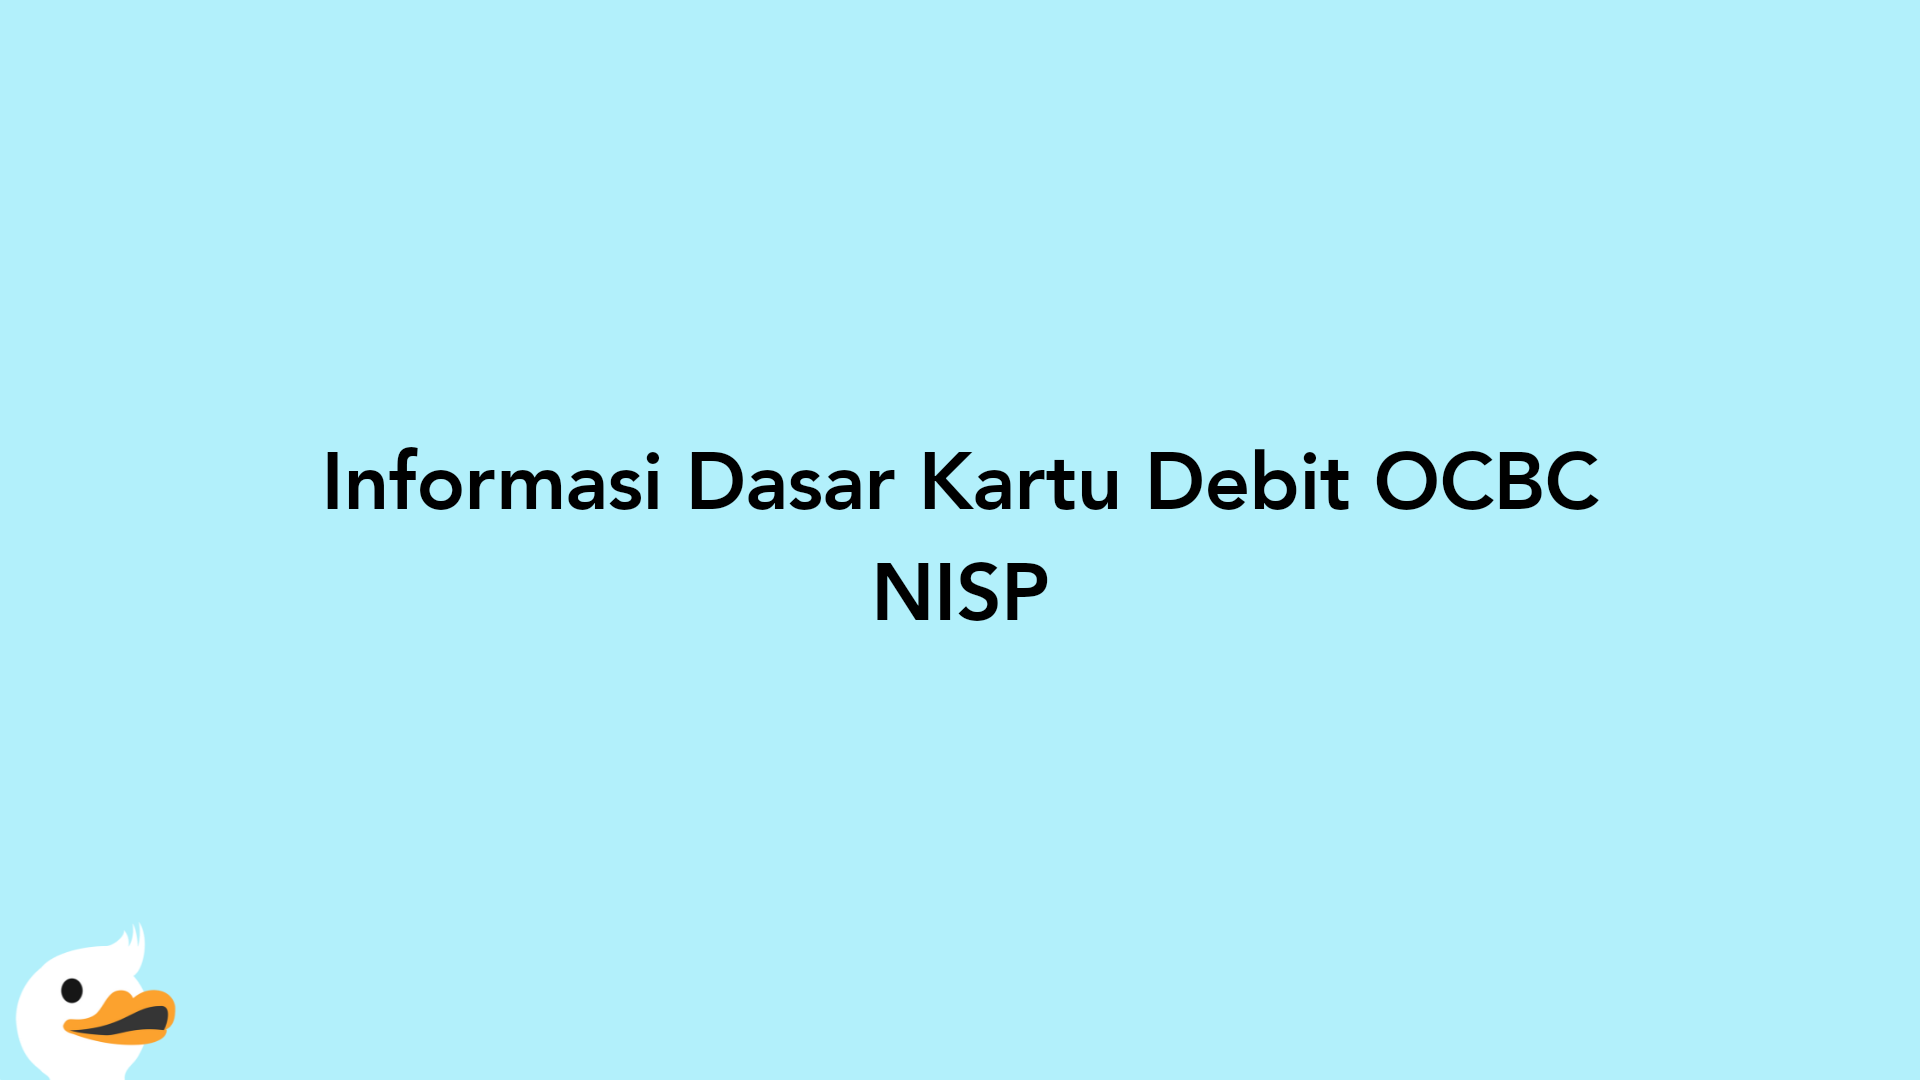 Informasi Dasar Kartu Debit OCBC NISP